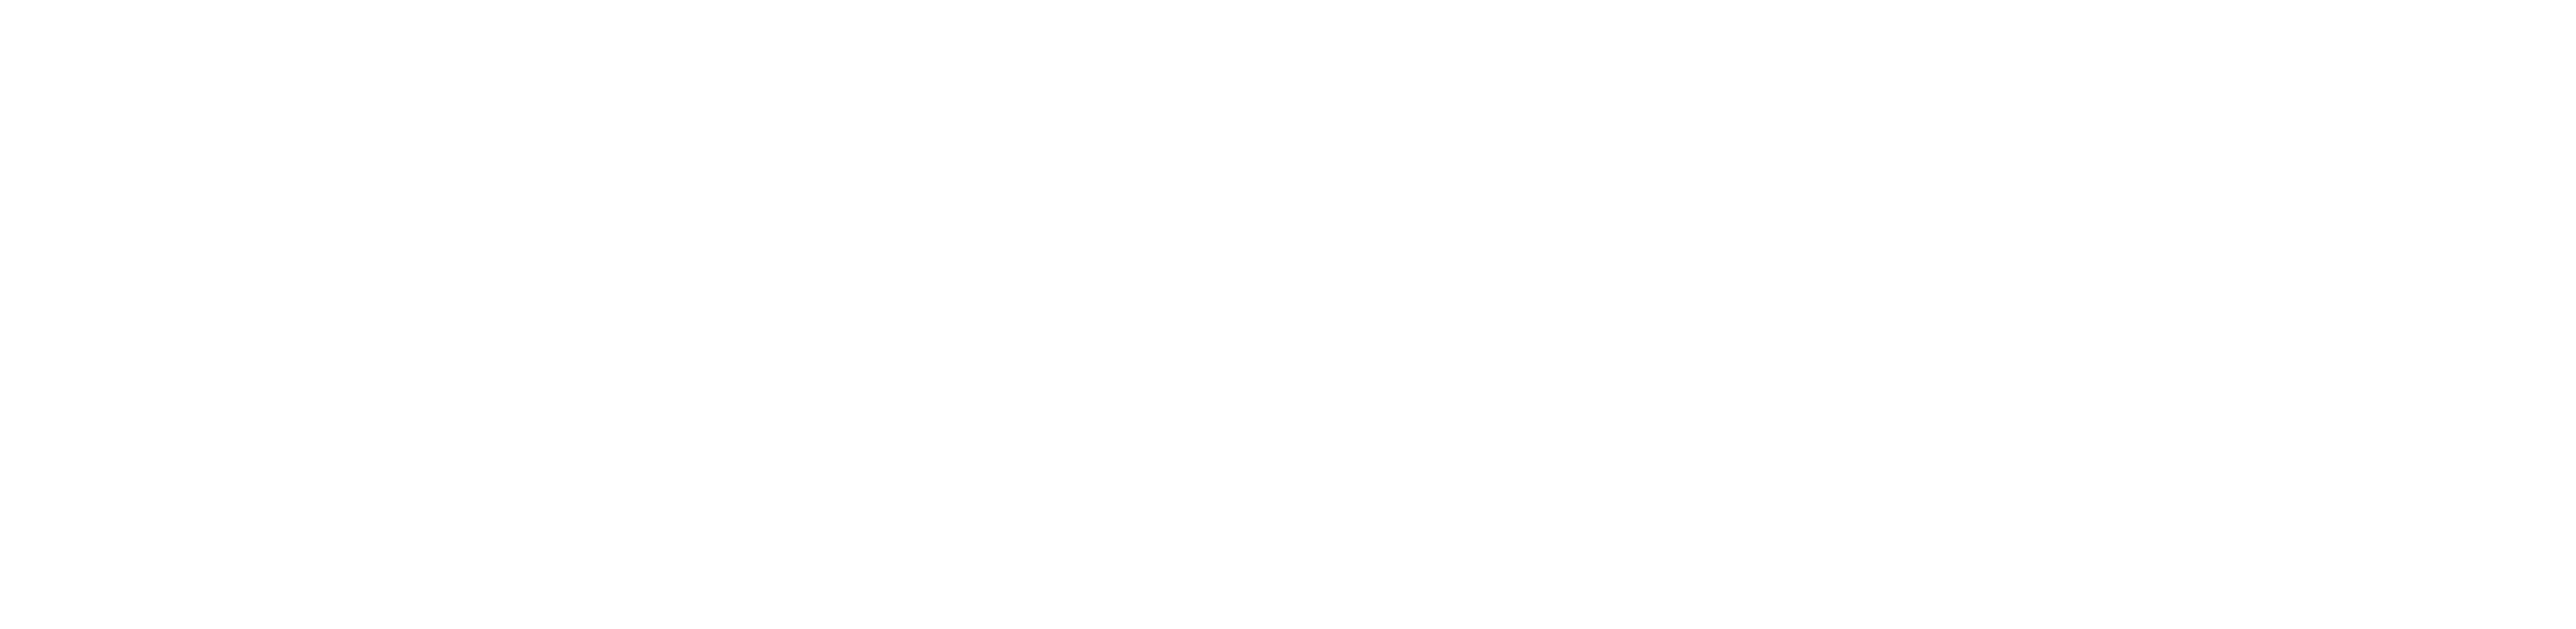 JP & Associates